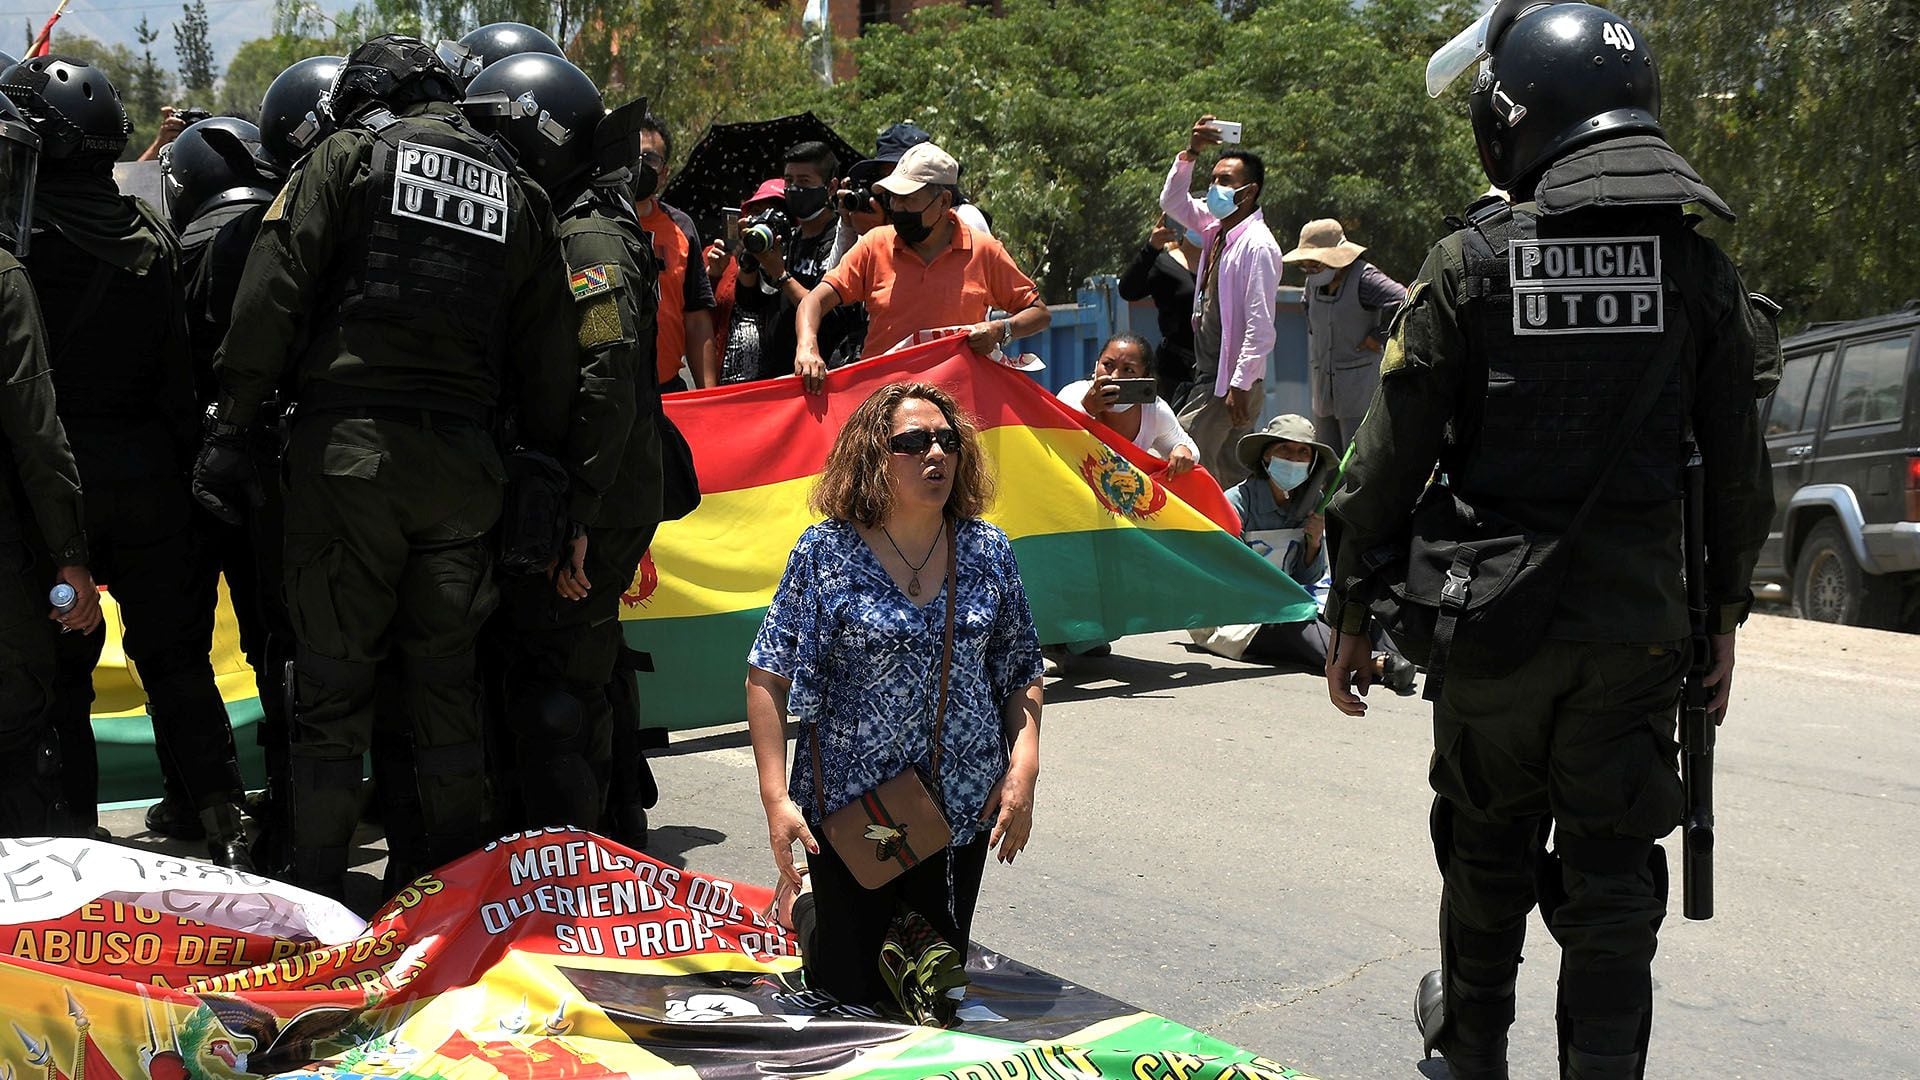 La Policía de Luis Arce y grupos afines al Movimiento al Socialismo (MAS) de Evo Morales intervinieron con violencia los bloqueos callejeros instalados en ciudades como Santa Cruz, Cochabamba y Potosí en el segundo día de una huelga nacional contra una polémica ley (EFE)
